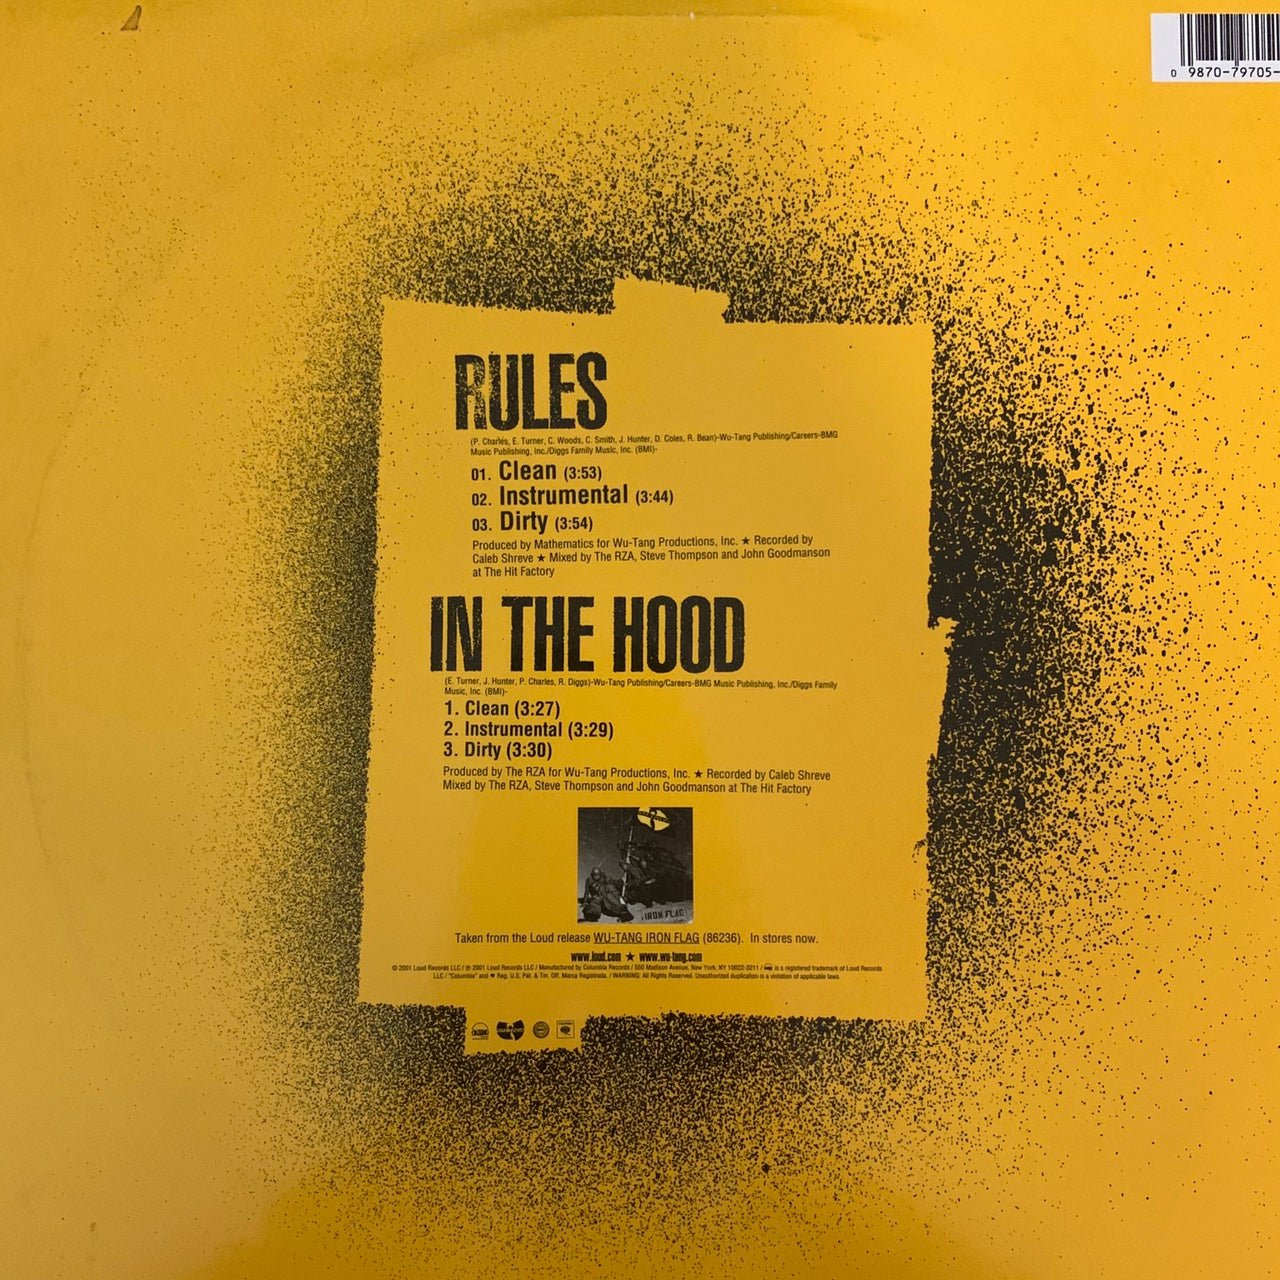 Wu Tang Clan “Rules” / “In The Hood” 6 Version 12inch Vinyl